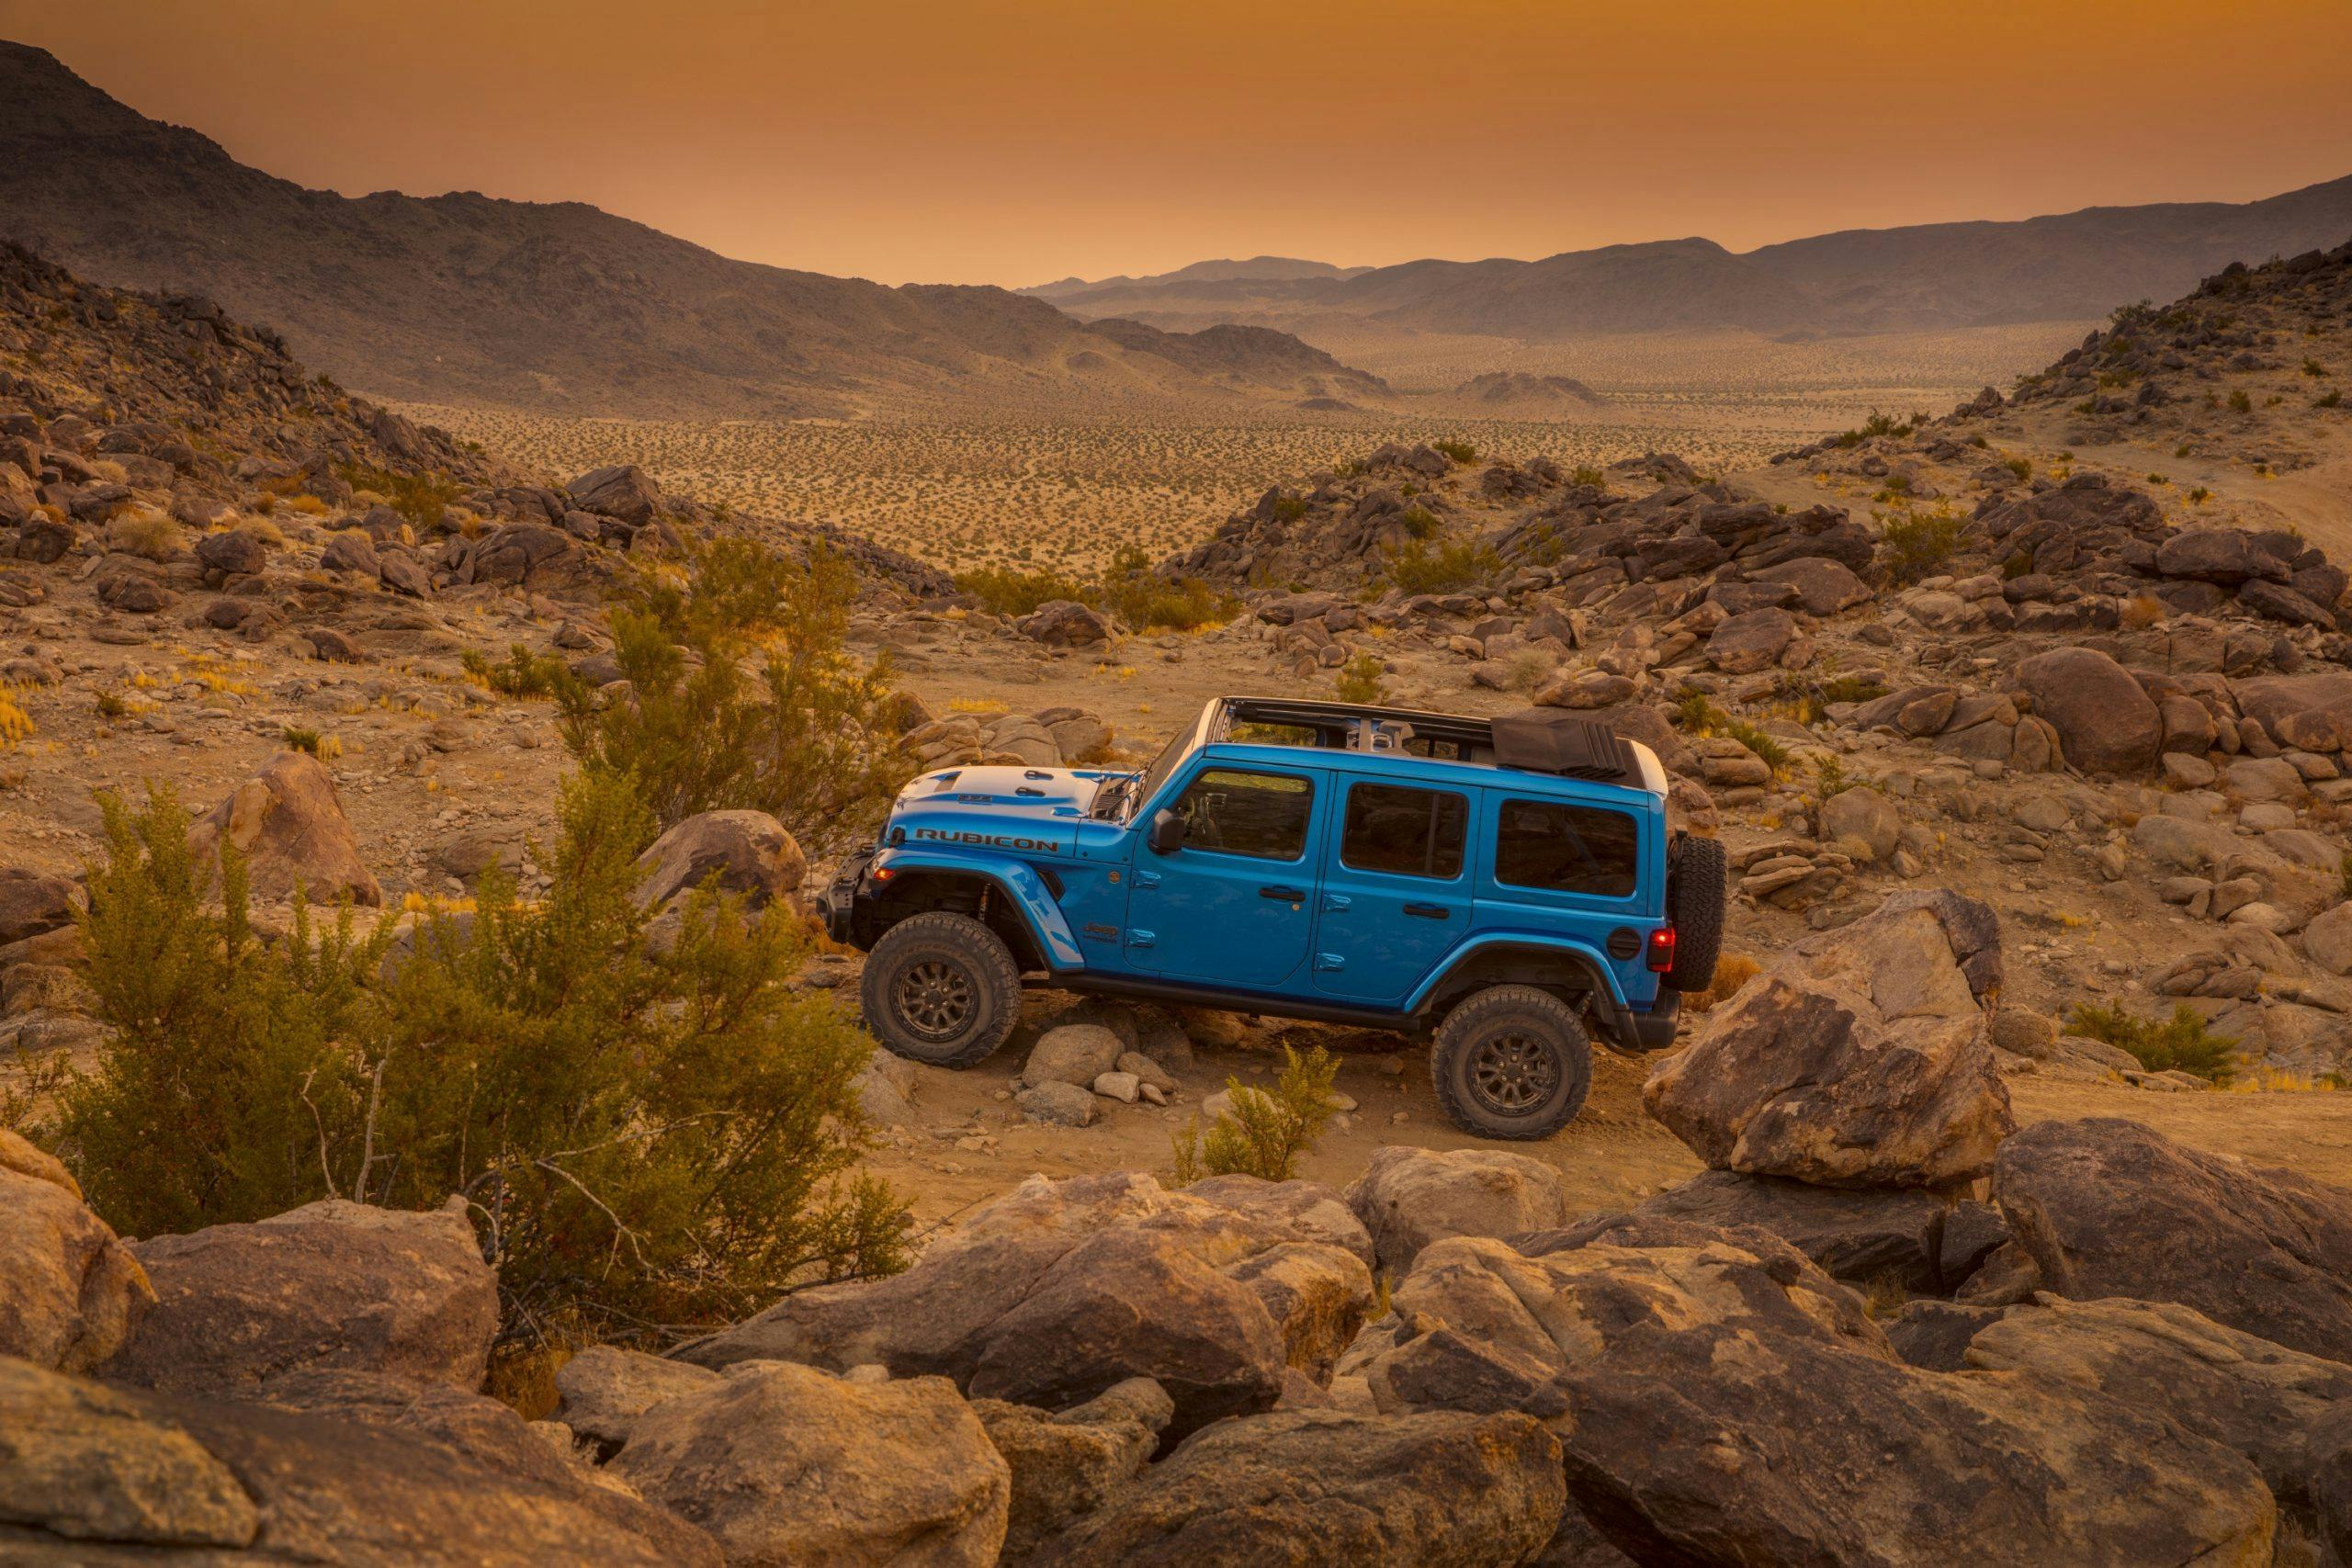 2021 Jeep Wrangler Rubicon 392 blue desert hero shot